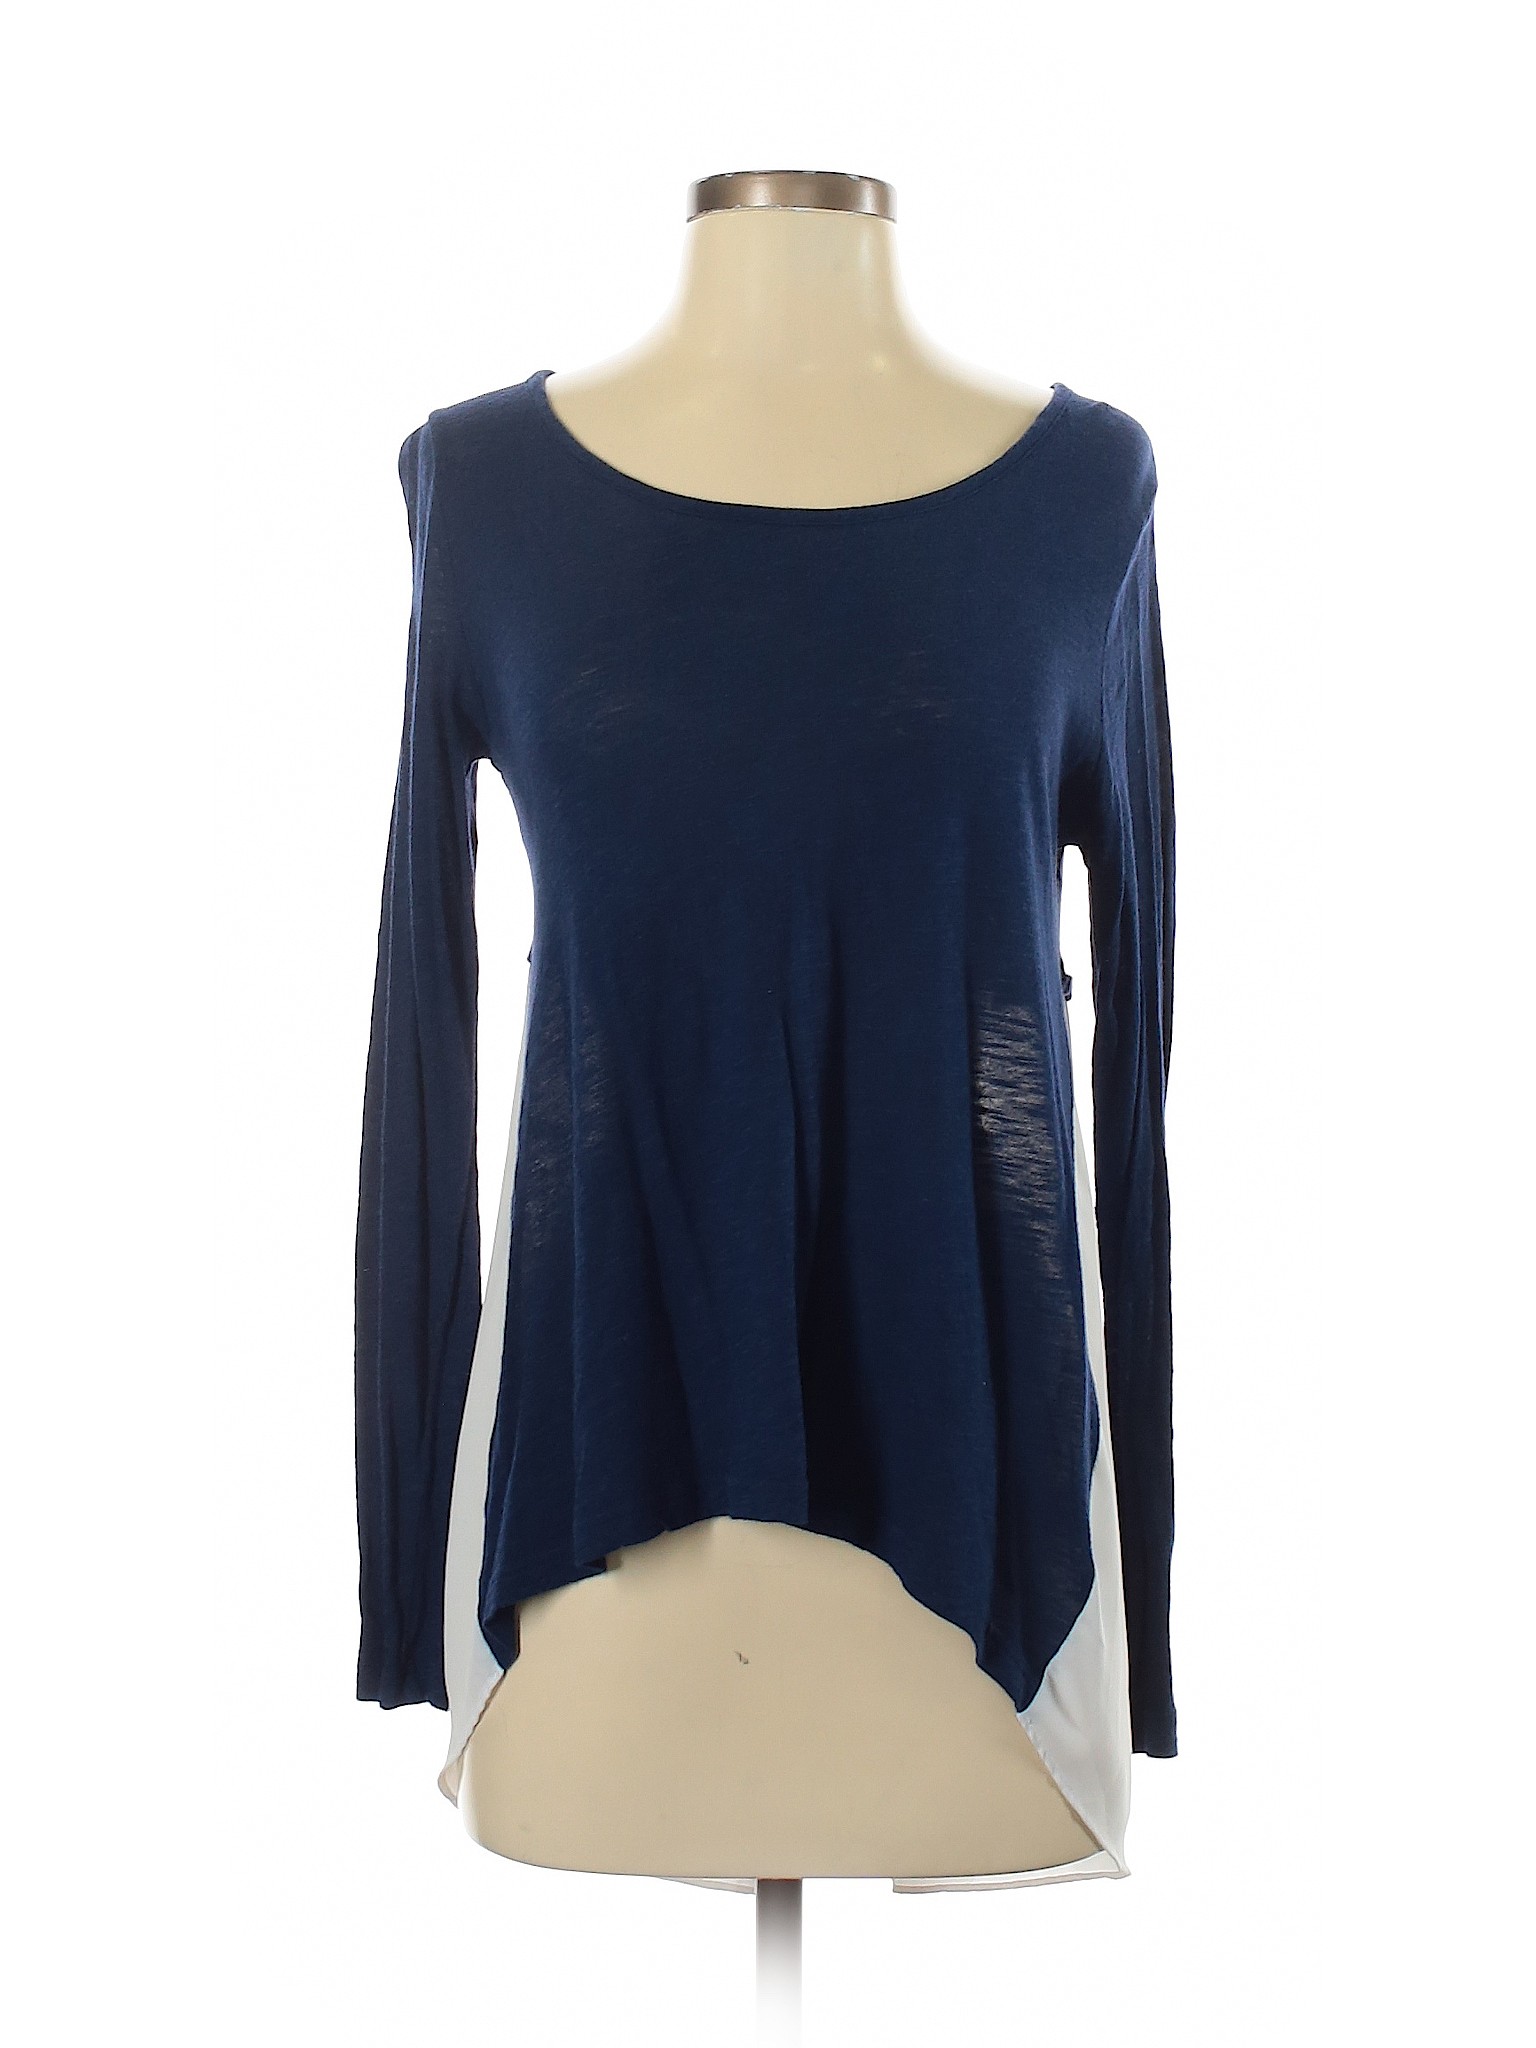 A.n.a. A New Approach Women Blue Long Sleeve Top S | eBay